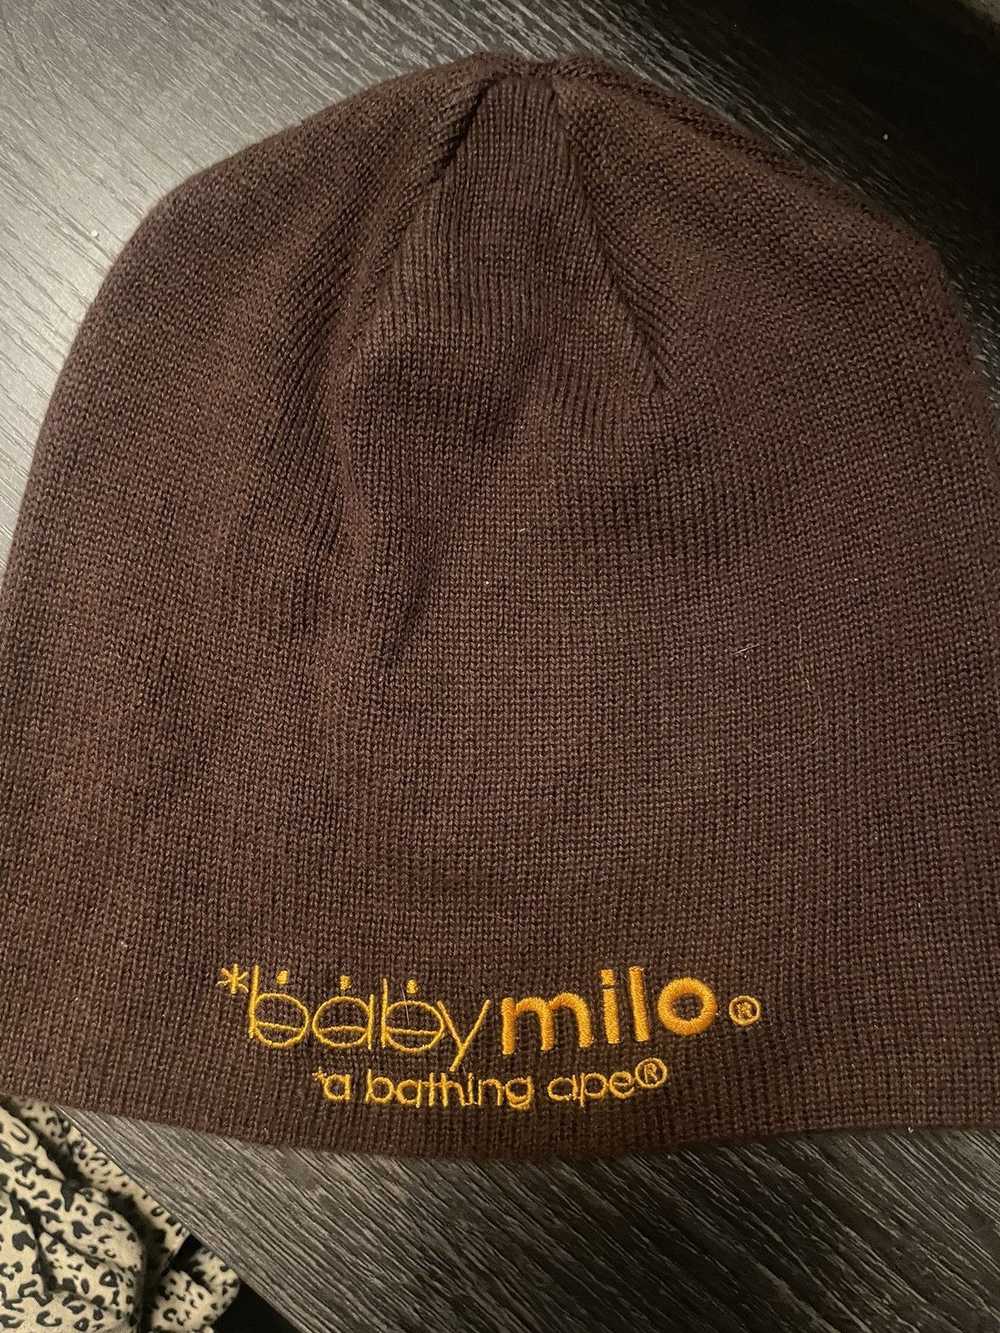 Bape Baby Milo Knit Cap - image 2